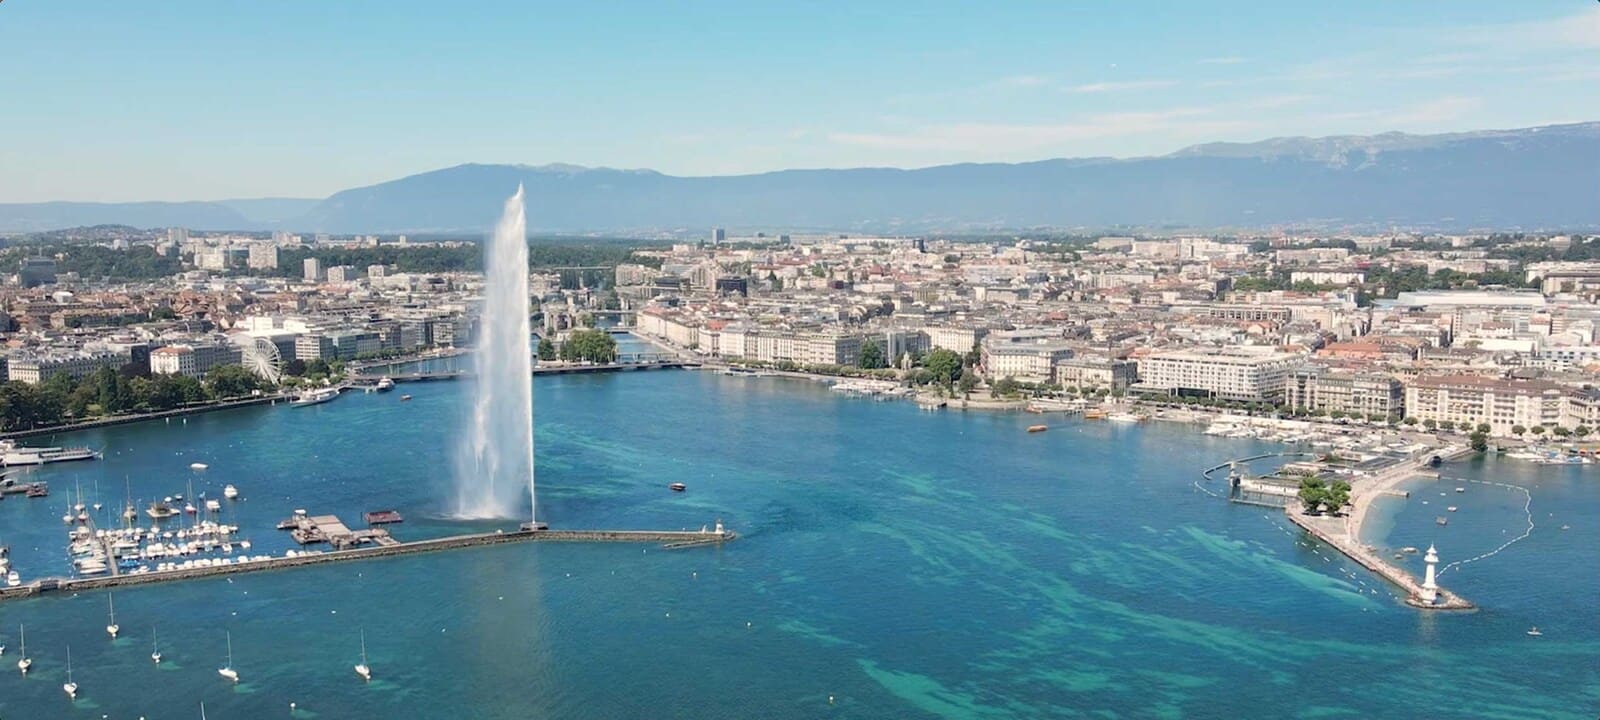 Analyse du marché immobilier à Genève : Tendances et opportunités